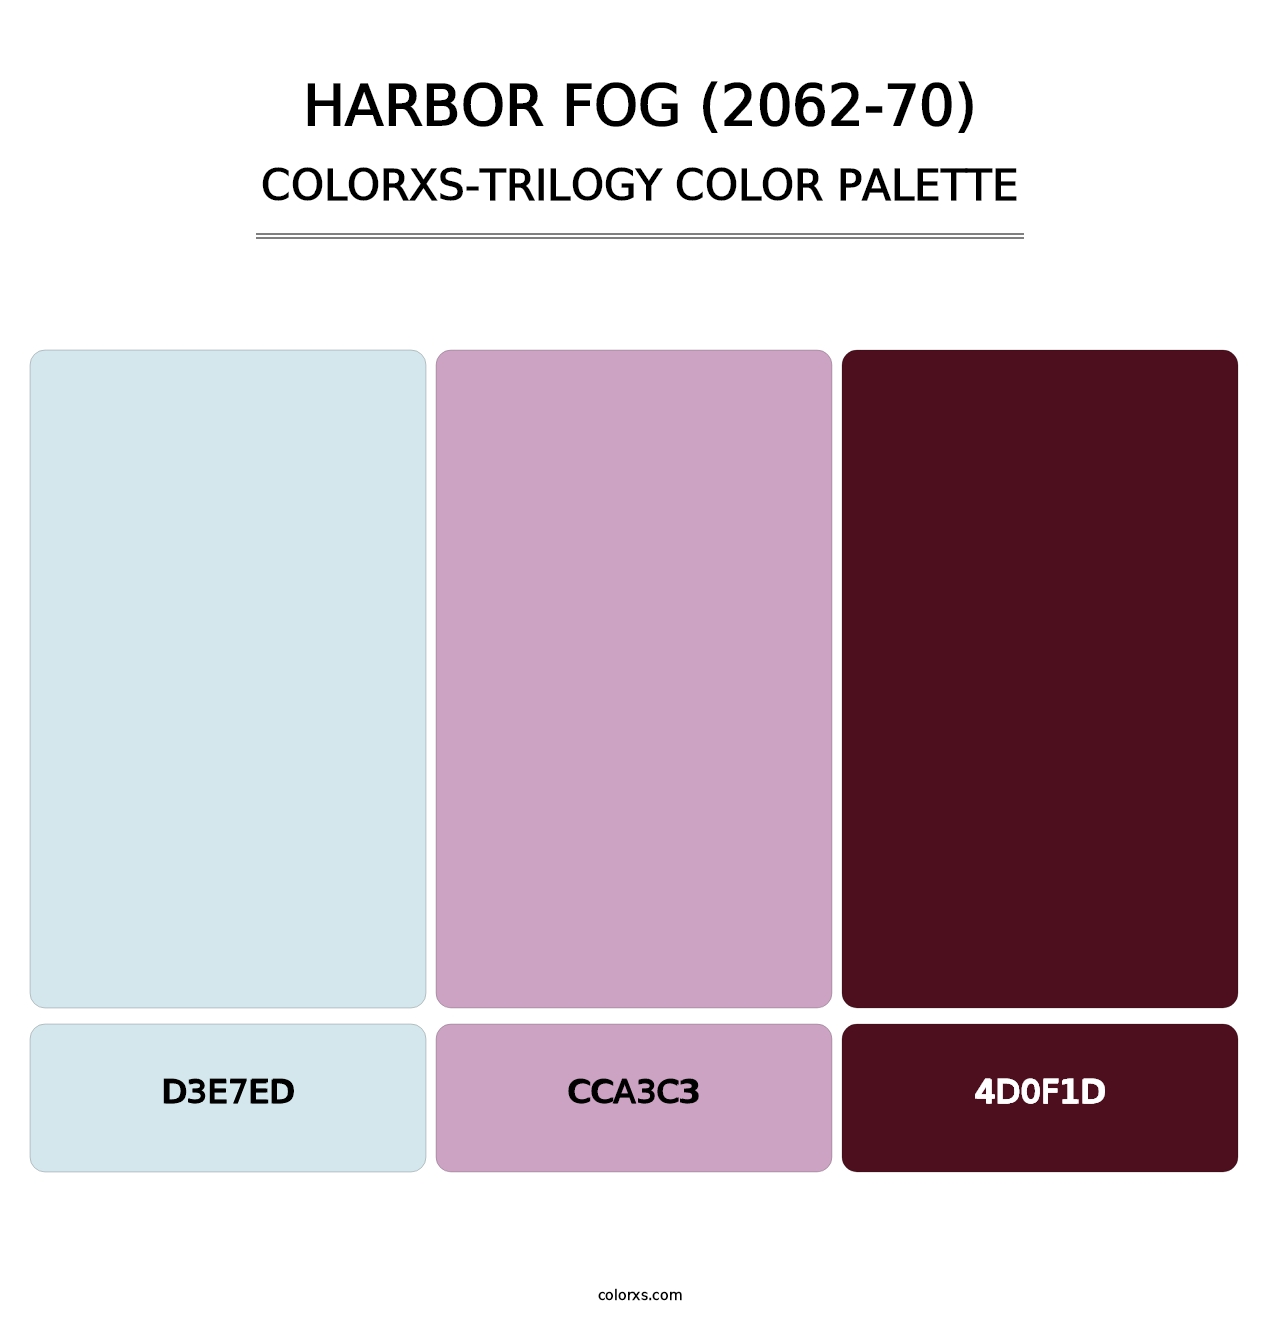 Harbor Fog (2062-70) - Colorxs Trilogy Palette